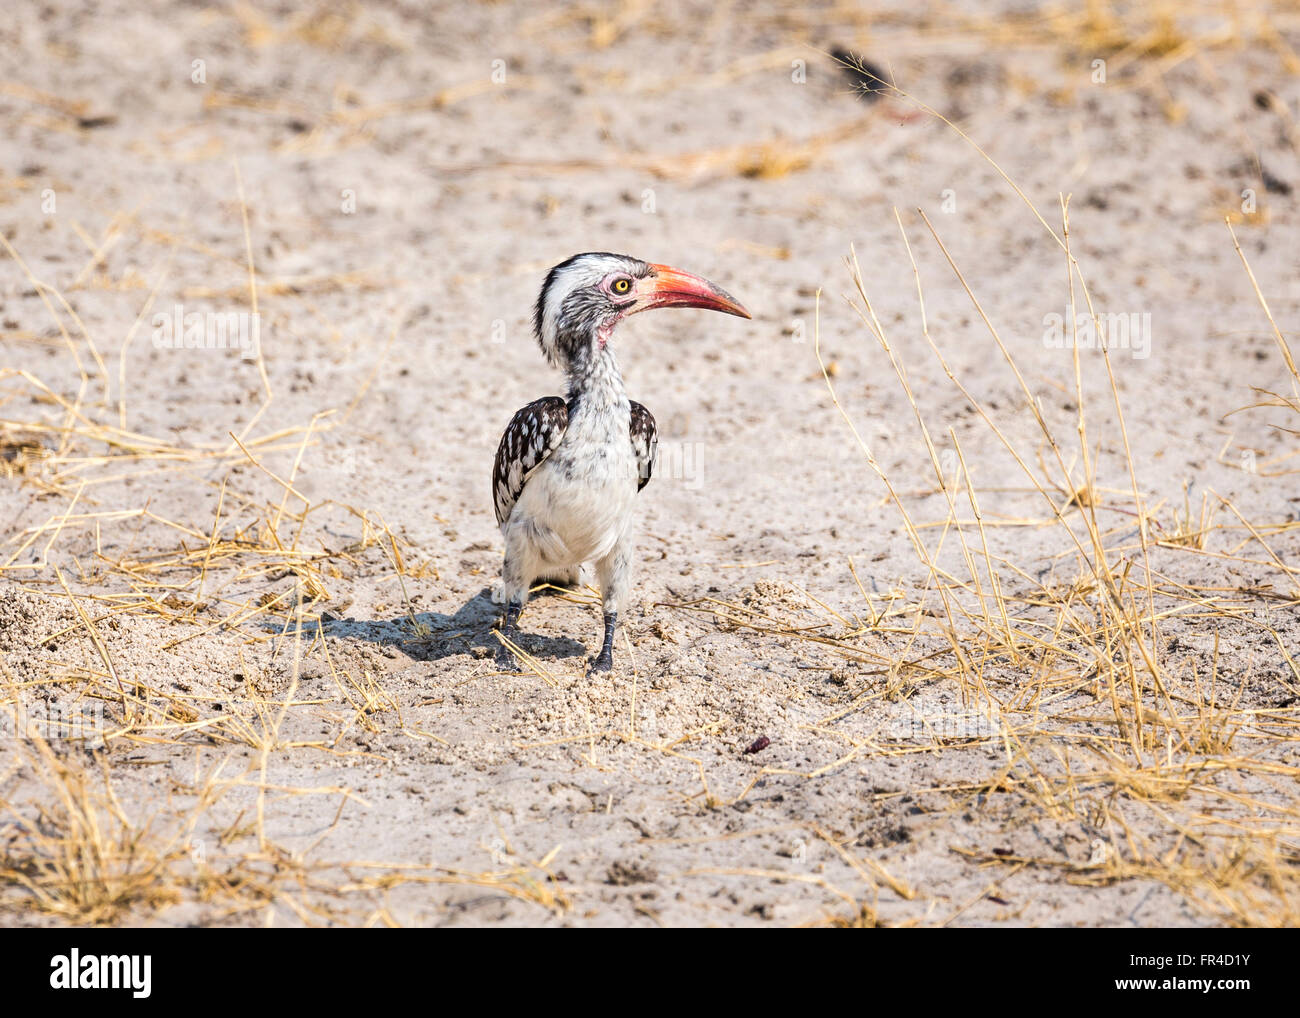 Northern Red-billed Hornbill (Tokus erythrorhynchus) auf dem Boden in der Savanne, Sandibe Camp, Moremi Wildreservat, Kalahari, Okavango Delta, Botswana, Afrika Stockfoto